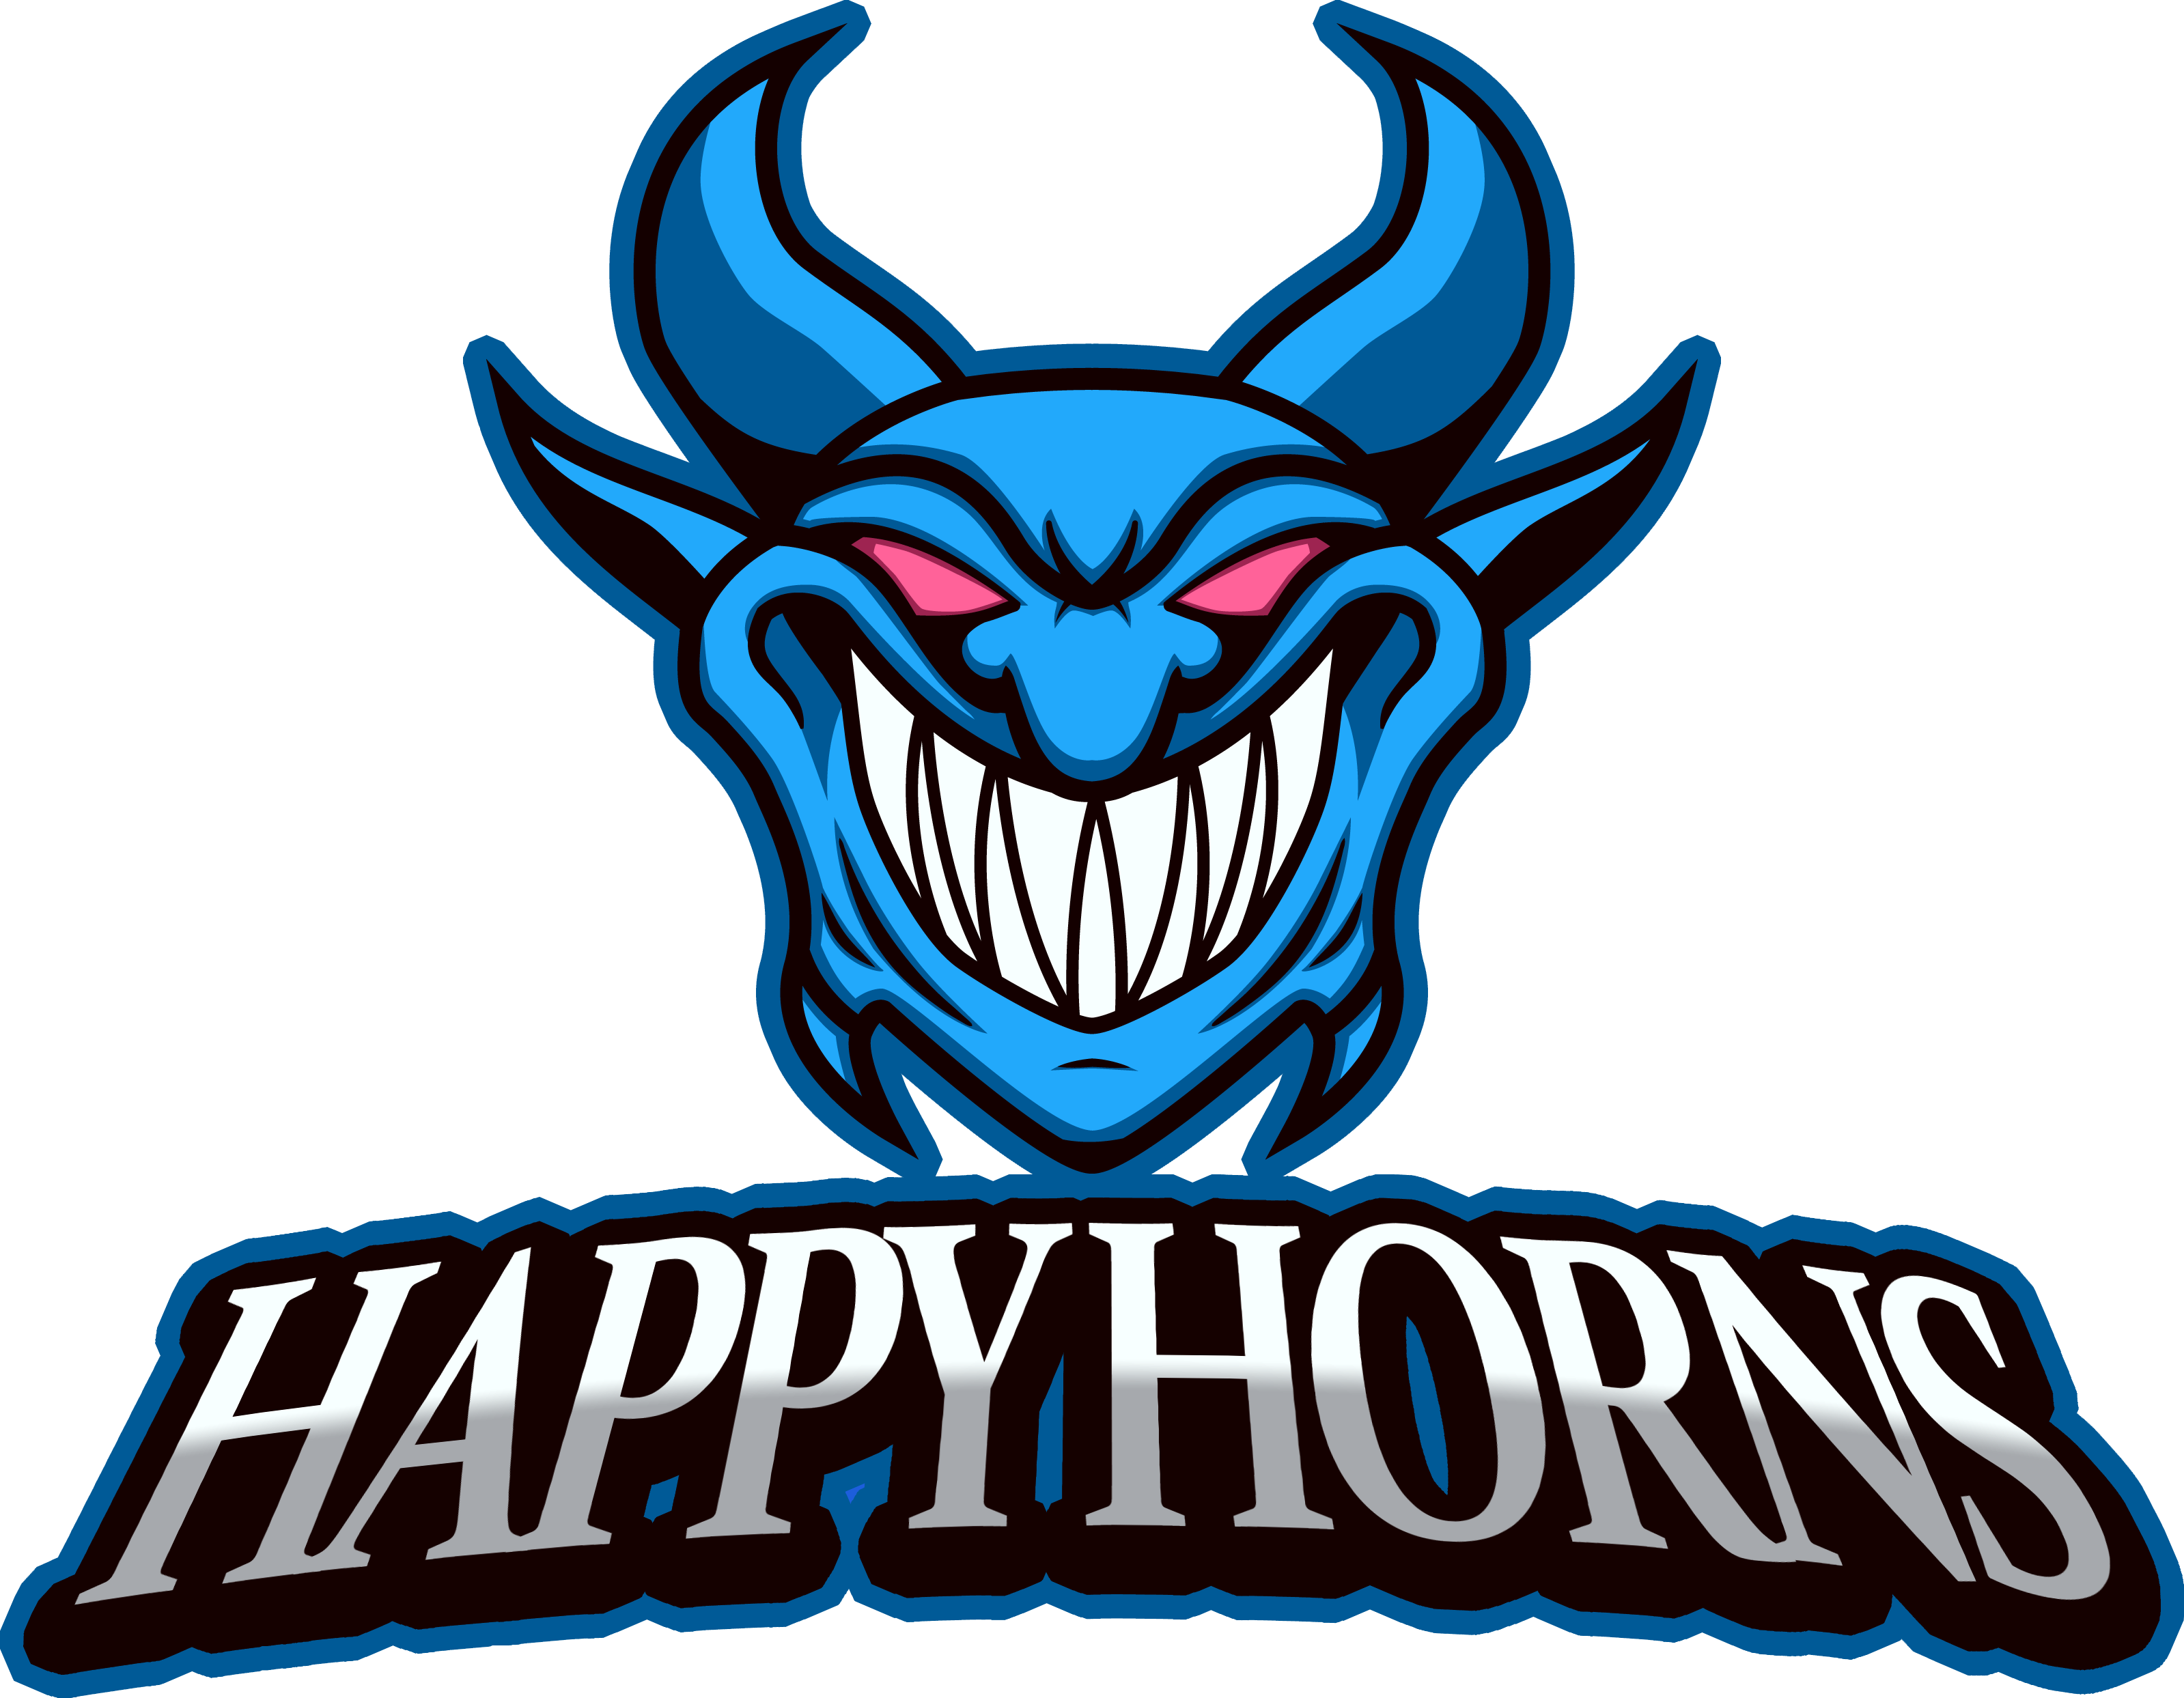 Happy Horns